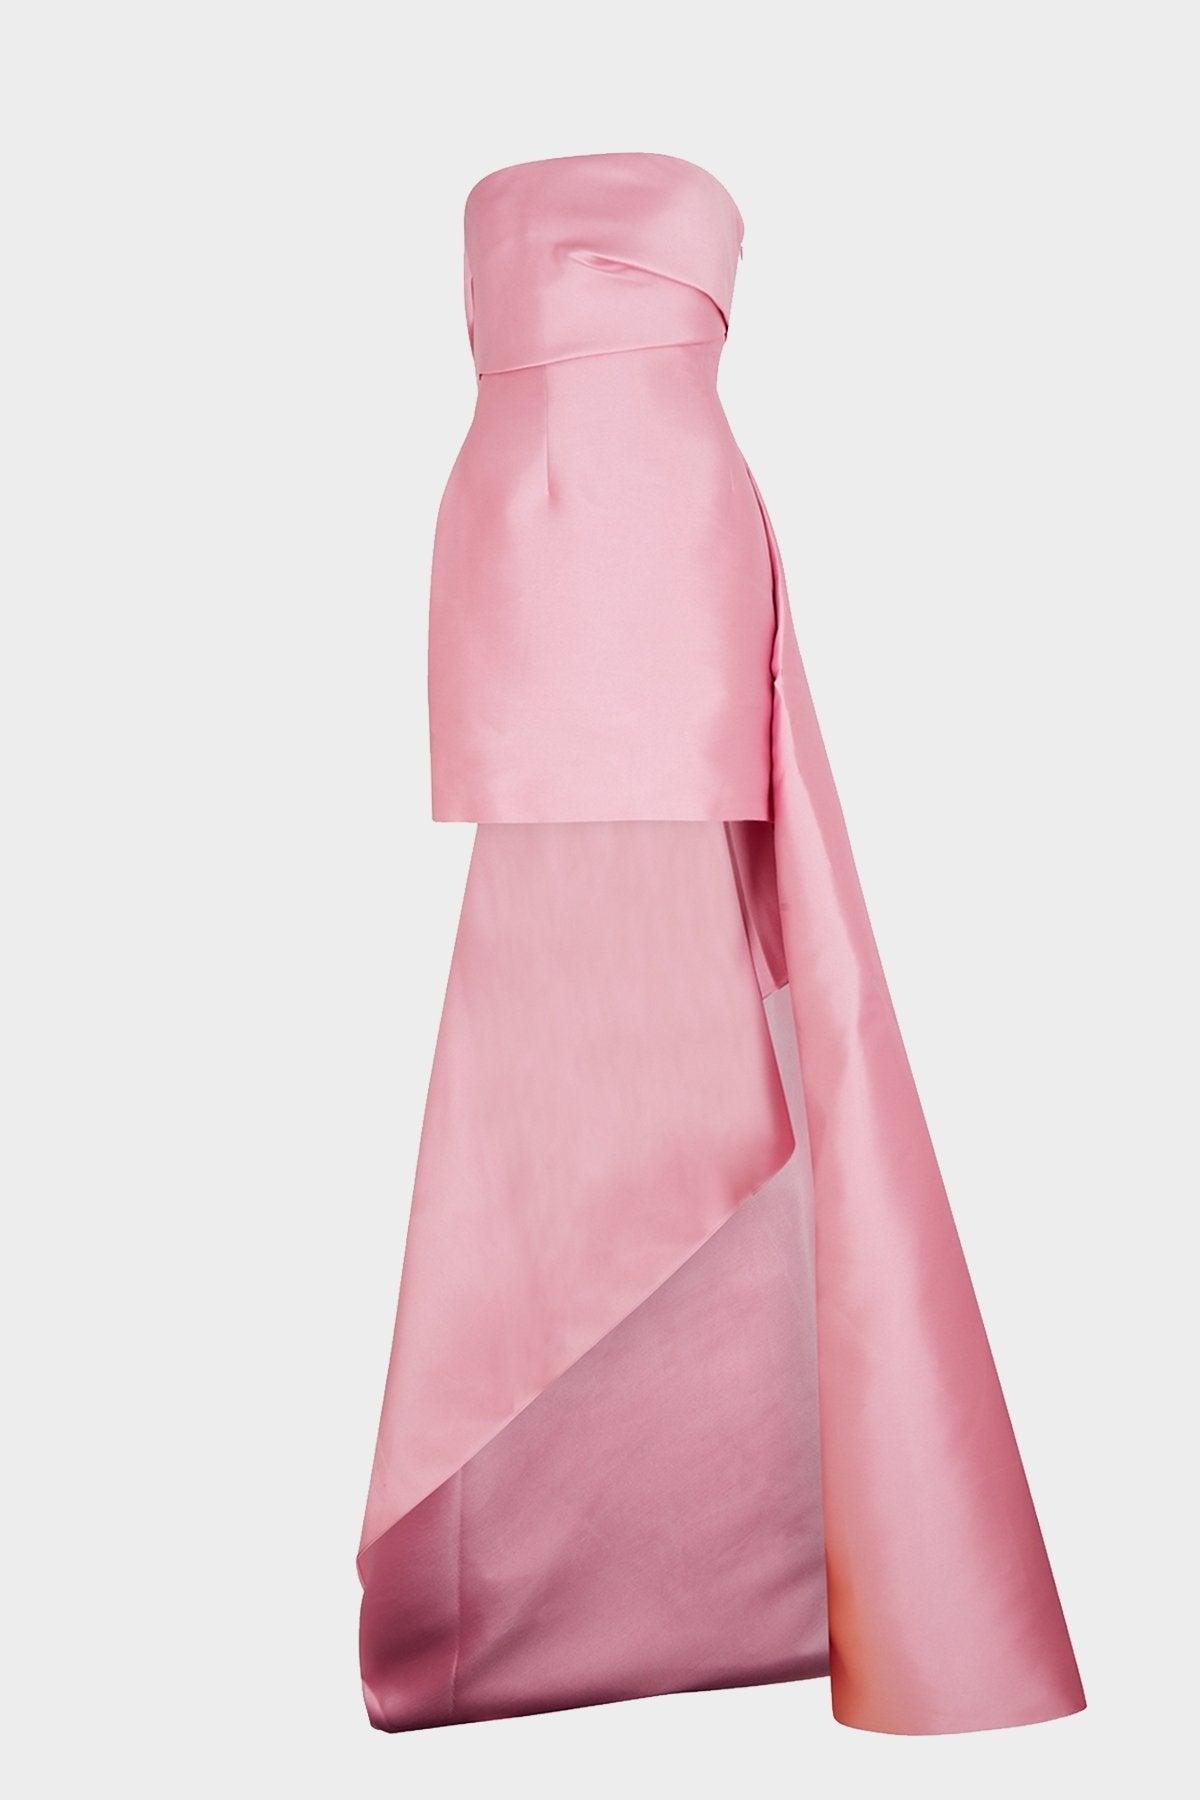 Solace London Meyer Mini Dress In Bubblegum in Pink | Lyst